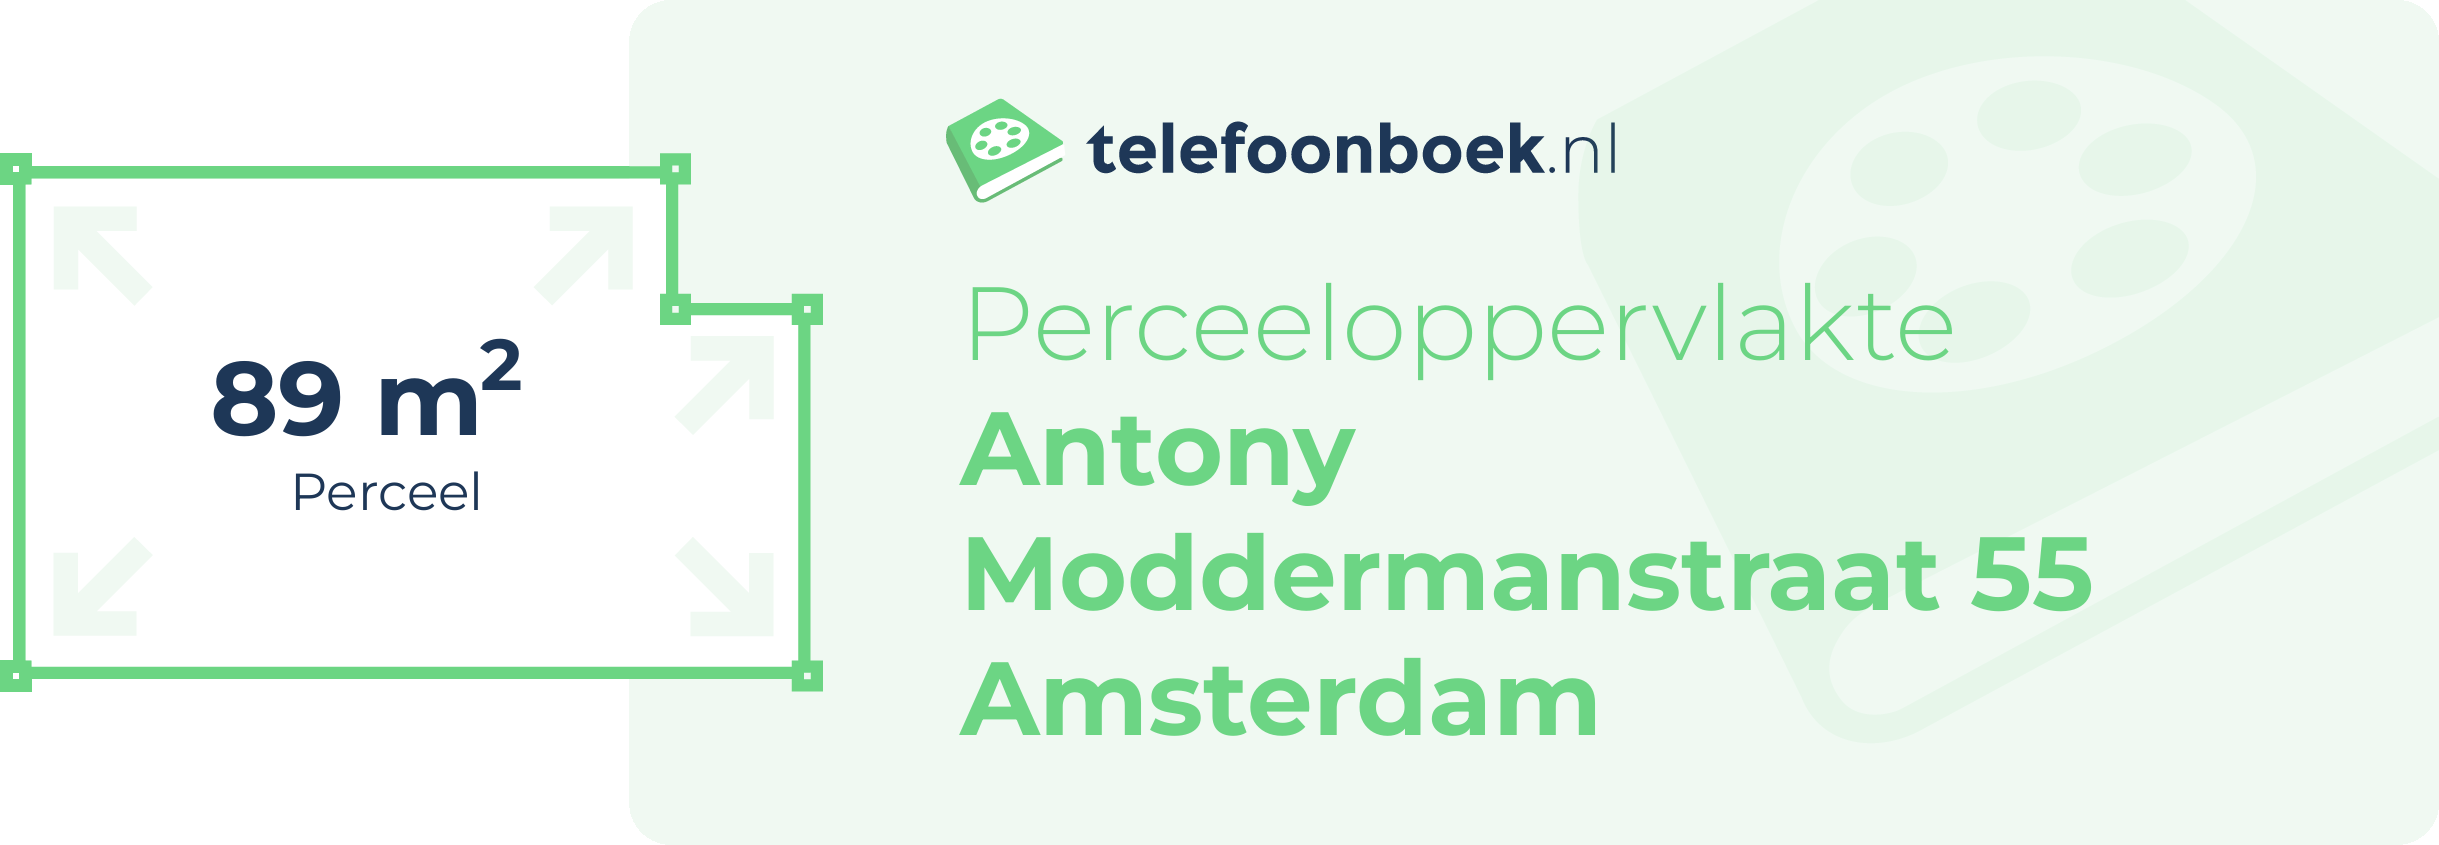 Perceeloppervlakte Antony Moddermanstraat 55 Amsterdam